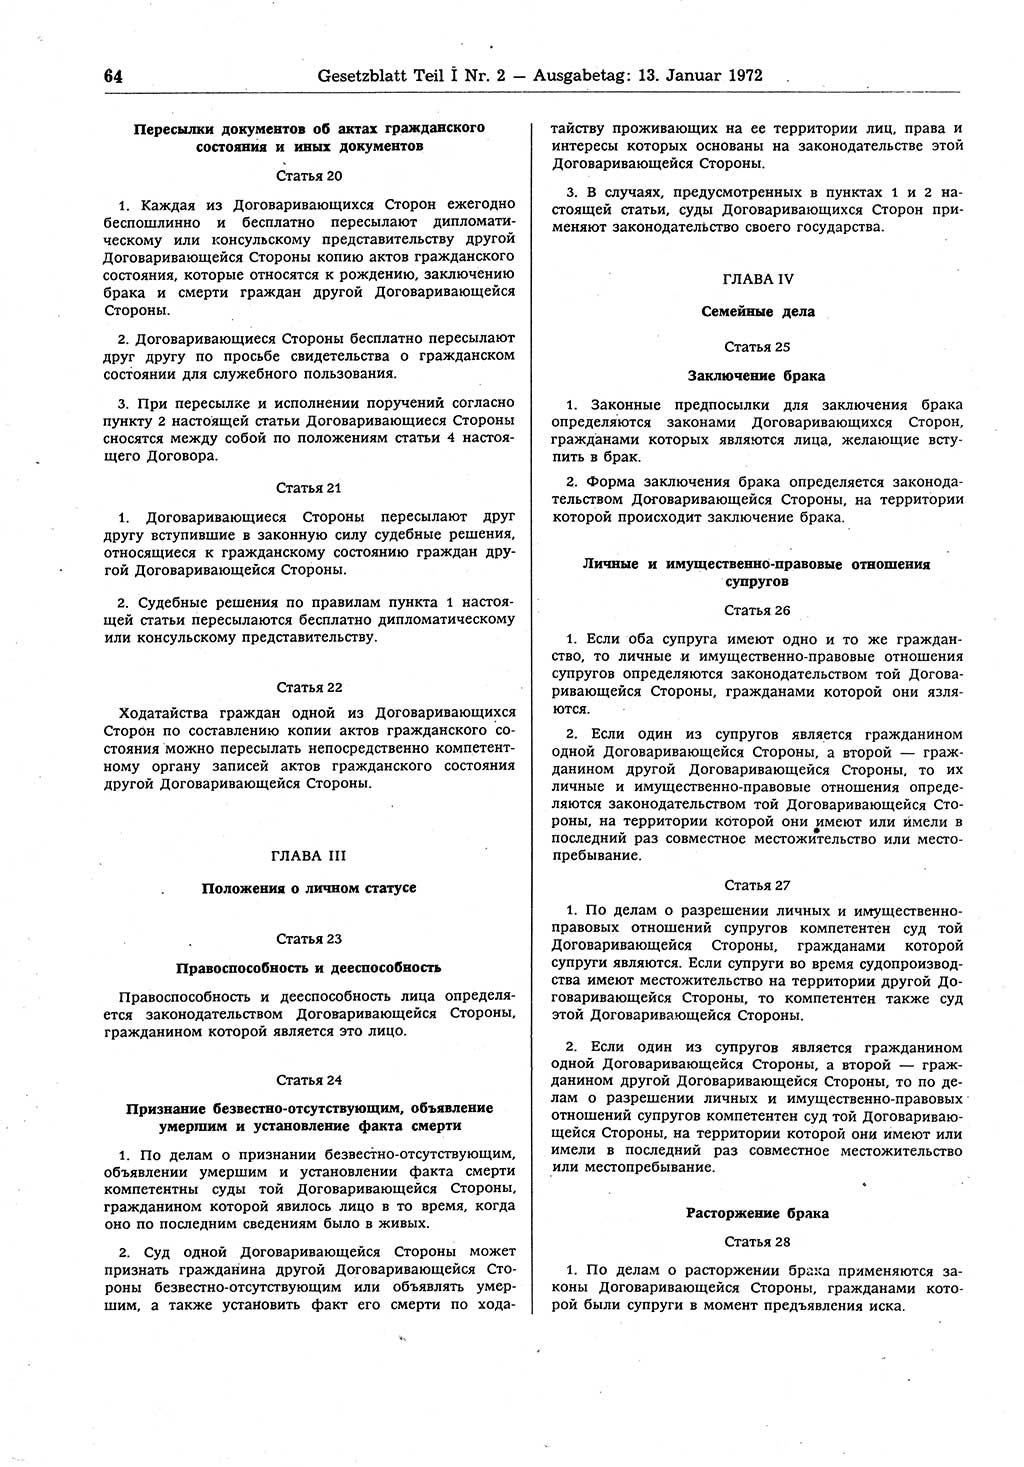 Gesetzblatt (GBl.) der Deutschen Demokratischen Republik (DDR) Teil Ⅰ 1972, Seite 64 (GBl. DDR Ⅰ 1972, S. 64)